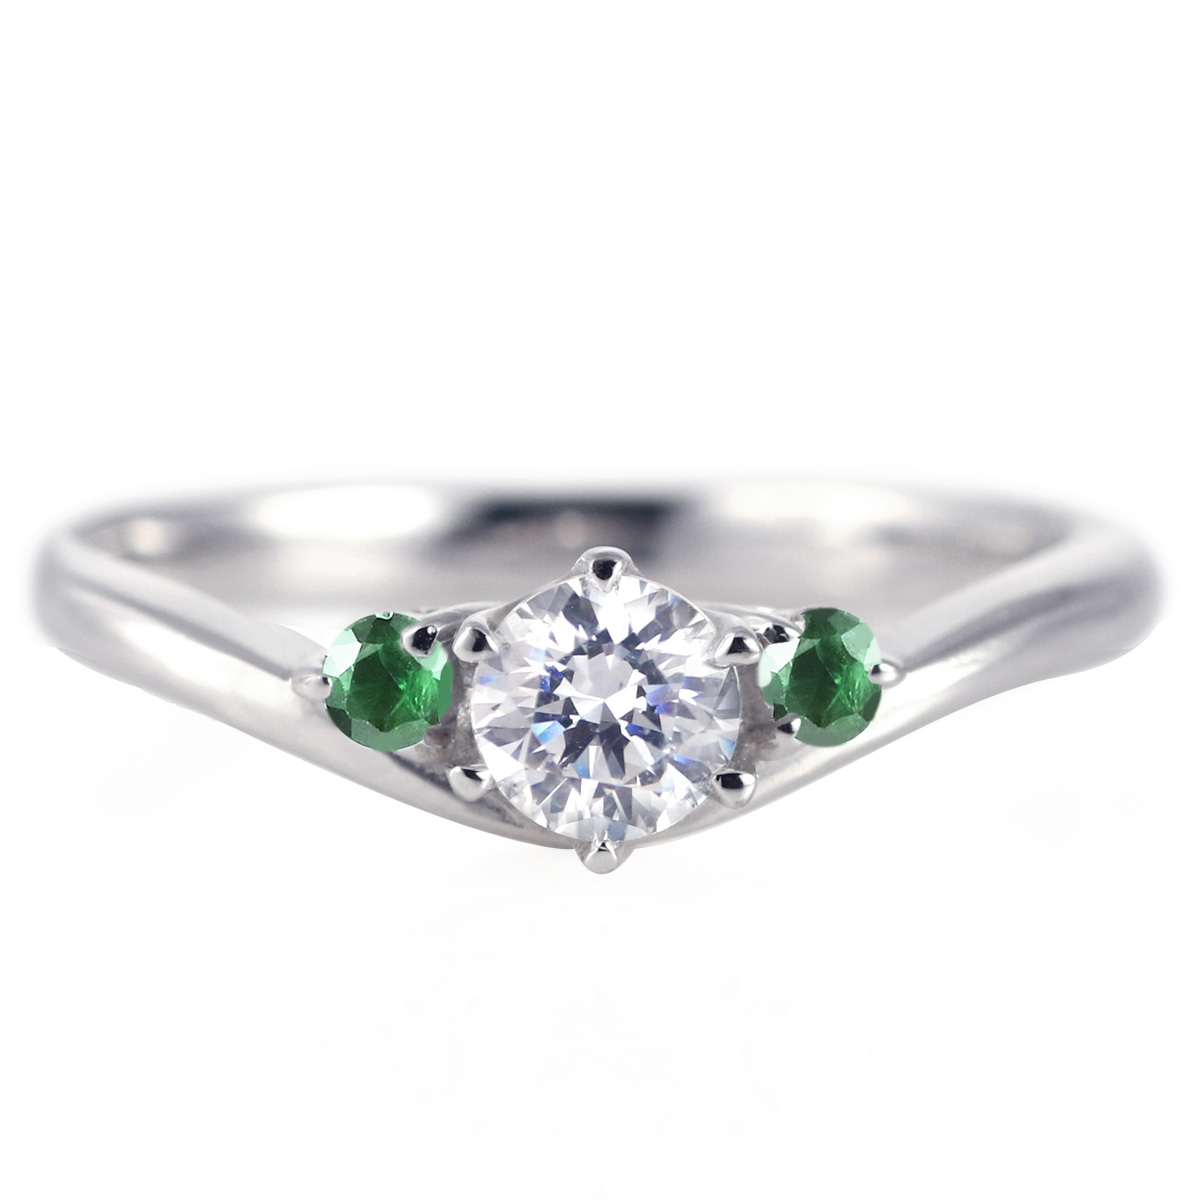 日本代理店正規品 エンゲージリング 婚約指輪 ダイヤモンド プラチナ